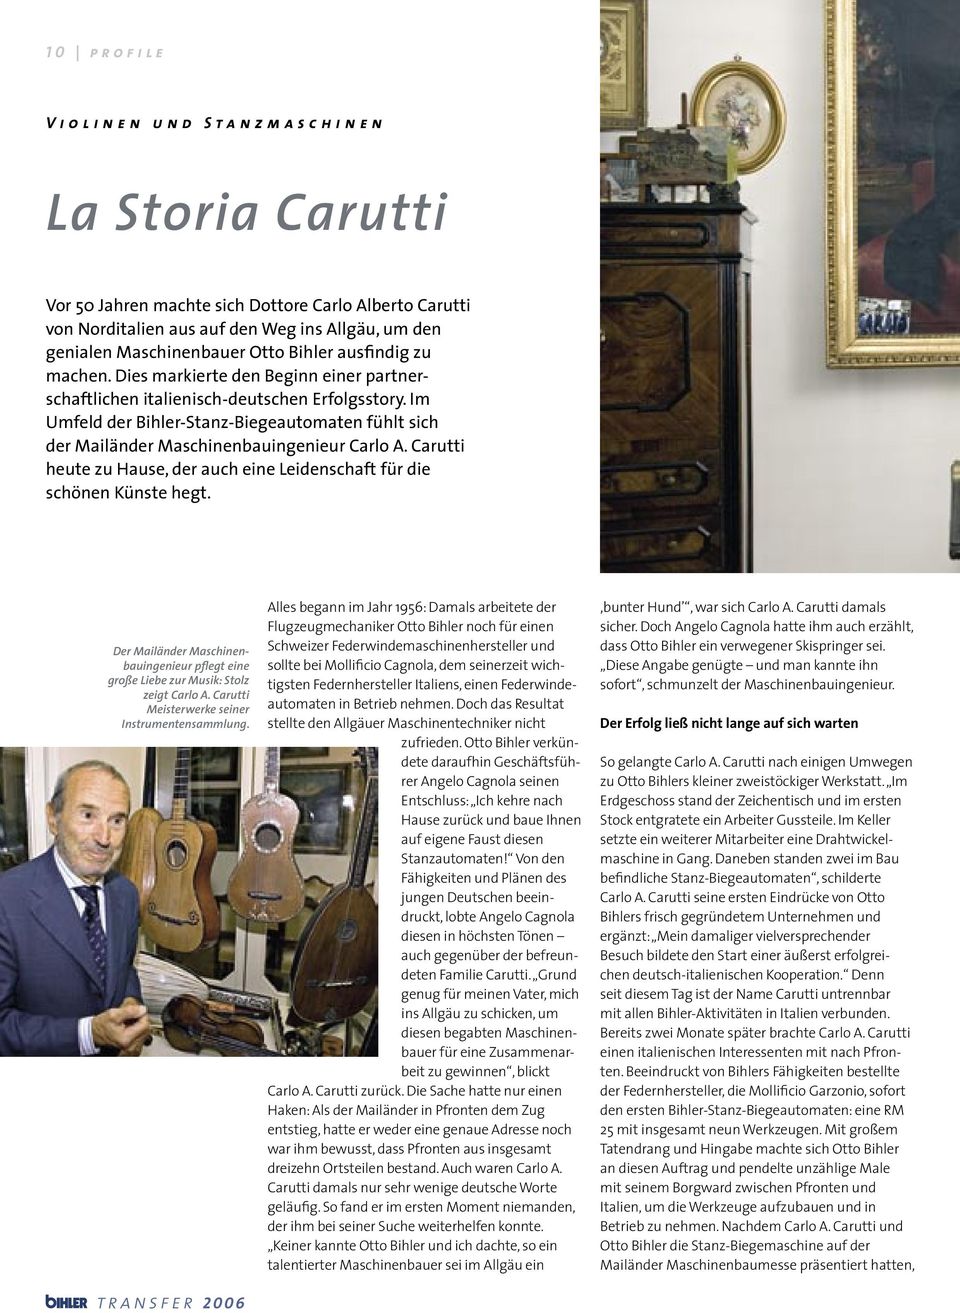 Im Umfeld der Bihler-Stanz-Biegeautomaten fühlt sich der Mailänder Maschinenbauingenieur Carlo A. Carutti heute zu Hause, der auch eine Leidenschaft für die schönen Künste hegt.